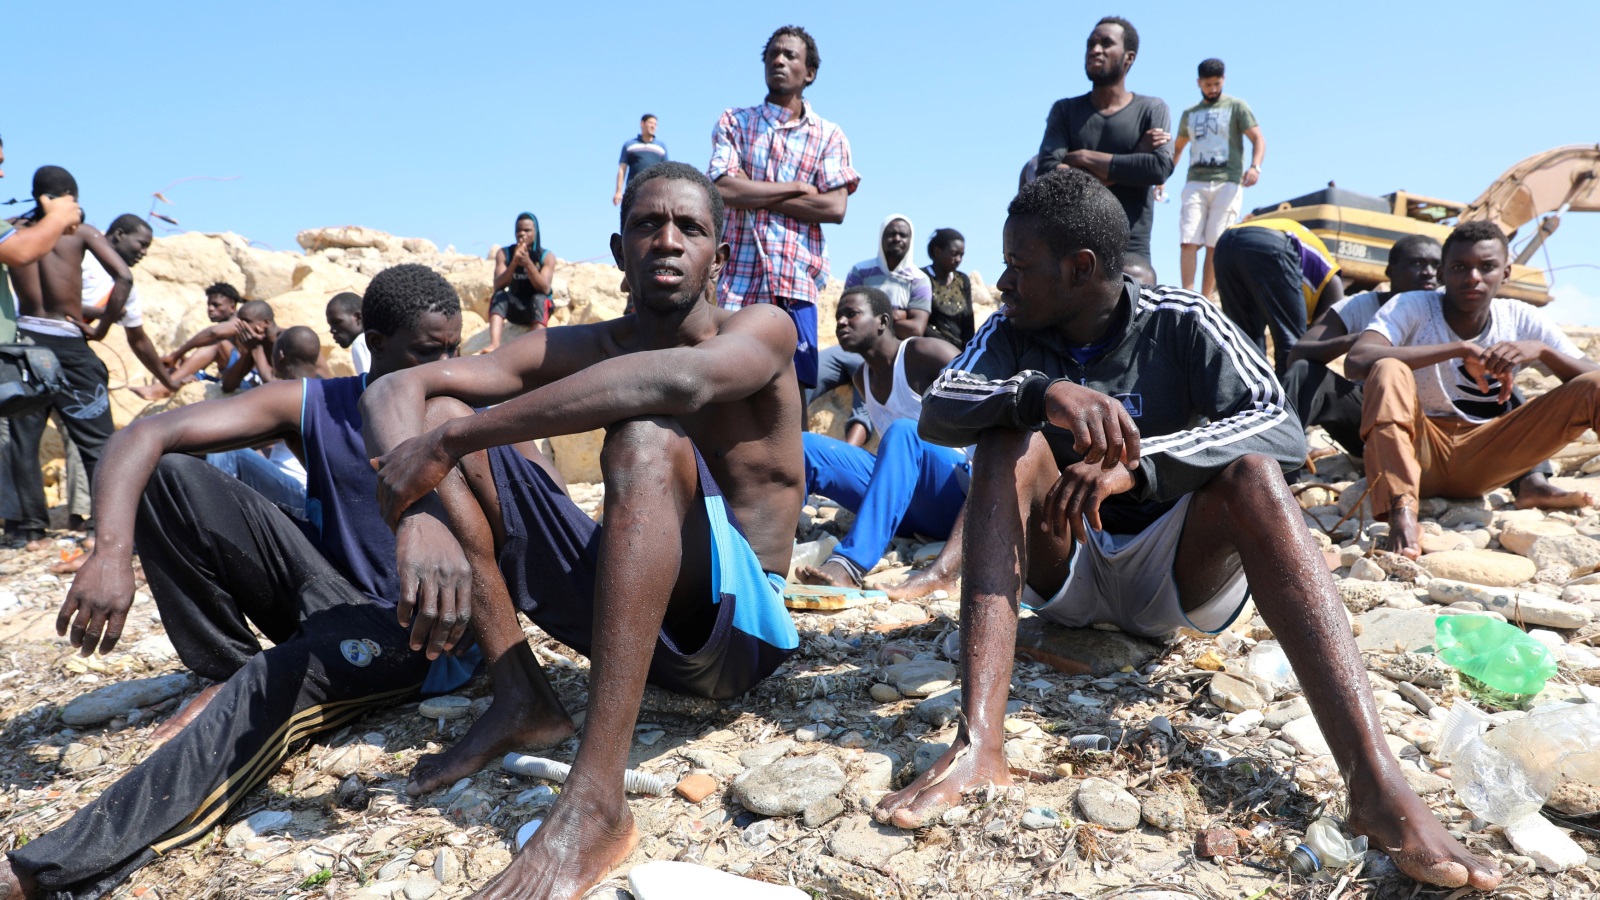 ‪ليبيا أصبحت محطة انطلاق للفارين من الحرب والفقر والذين يغامرون بحياتهم للعبور إلى أوروبا‬ (رويترز)